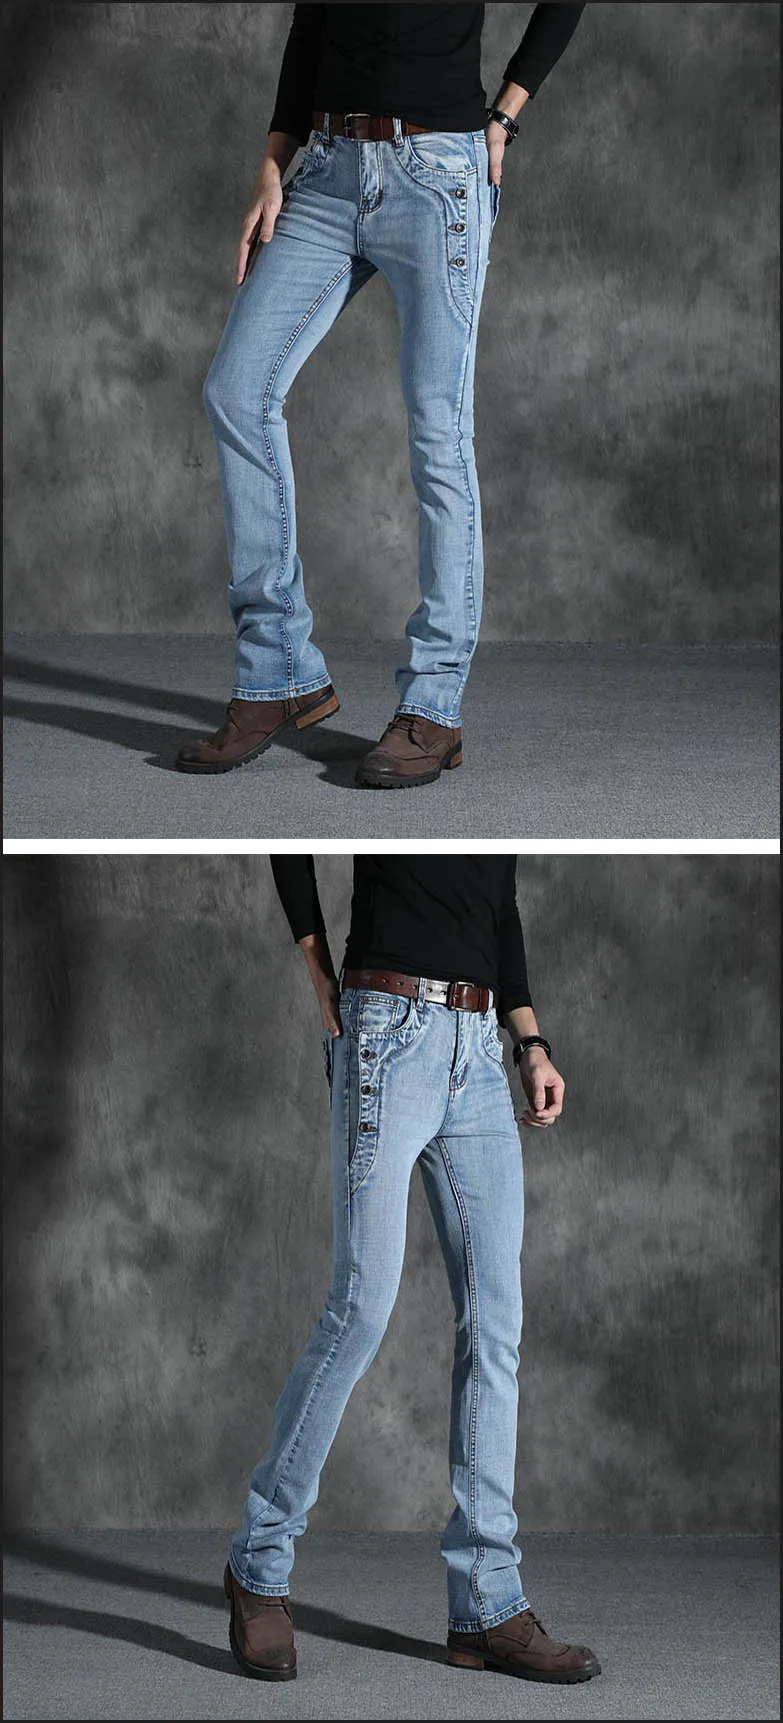 Мужские Винтажные дизайнерские расклешенные джинсы, Мужские повседневные джинсы, джинсы для мужчин, Стрейчевые узкие расклешенные джинсы, черные, синие расклешенные брюки